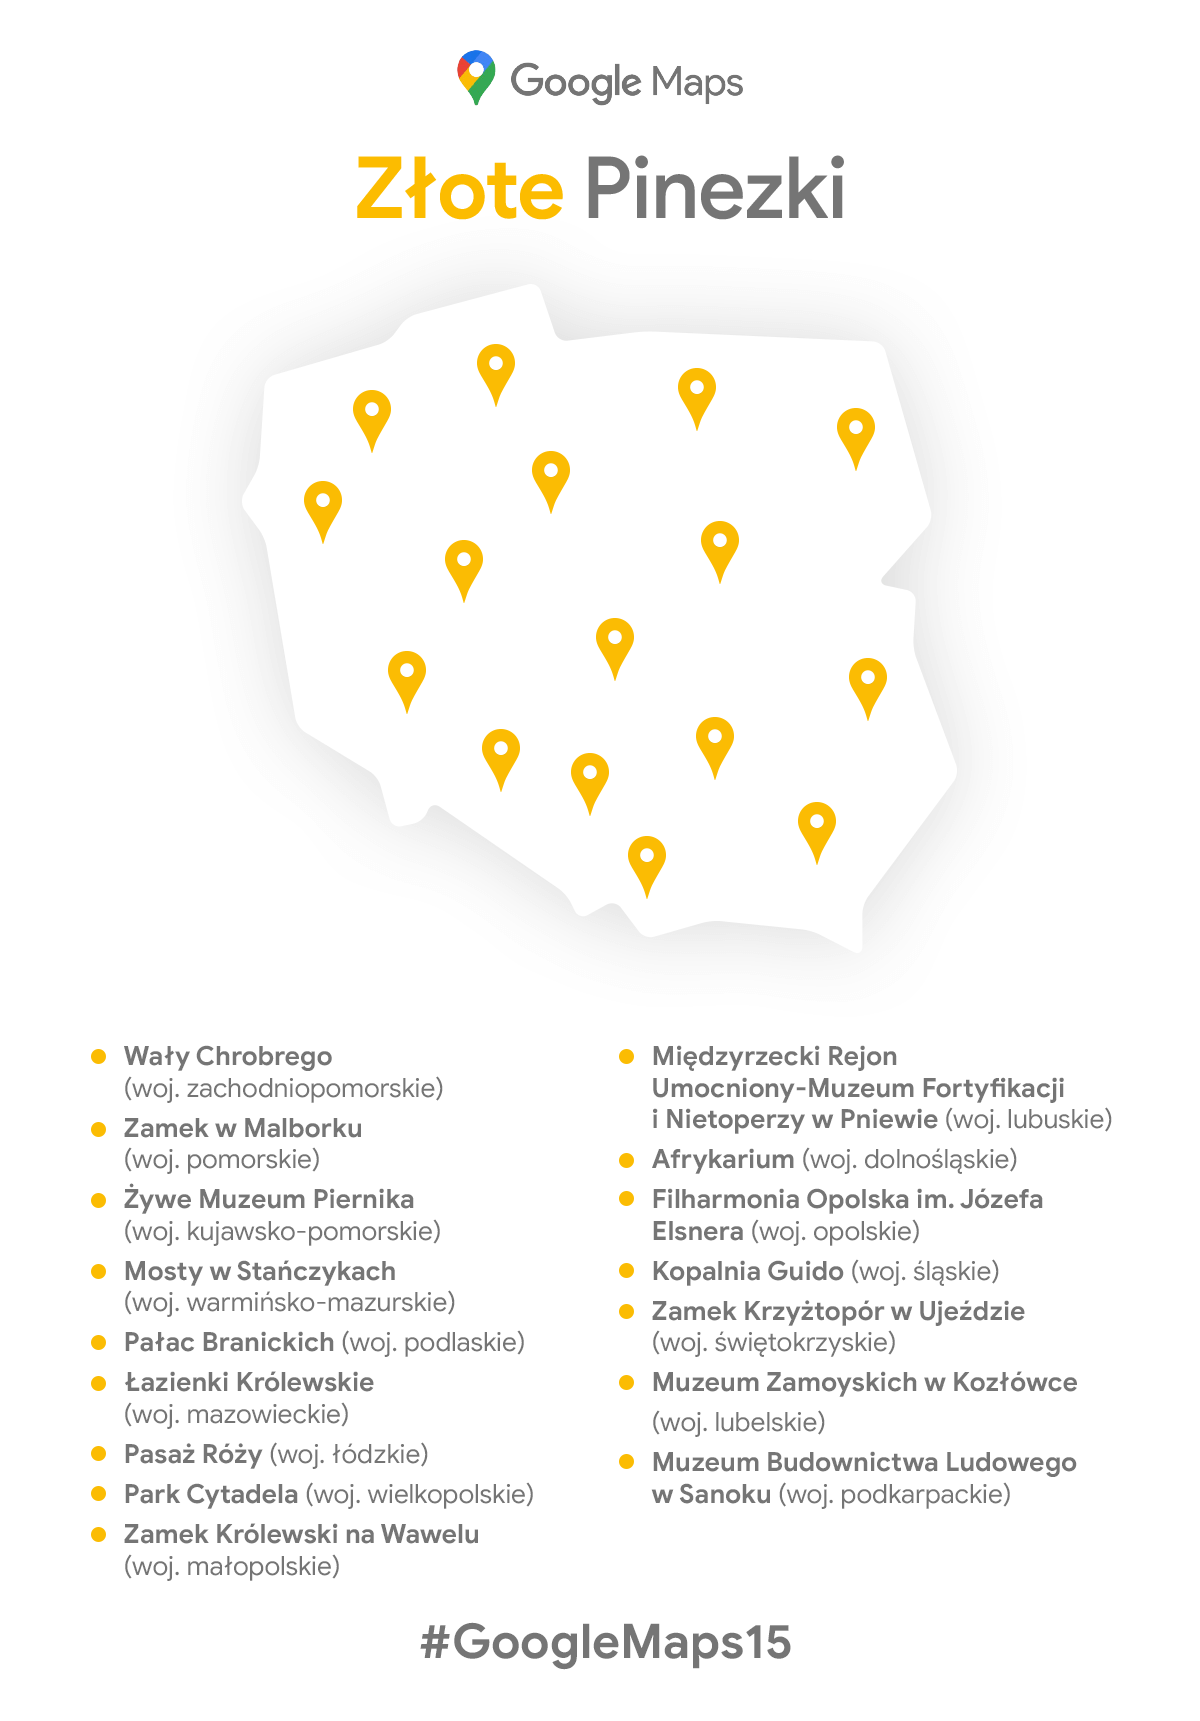 Mapy Google Złote Pinezki 2020 - mapa z zaznaczonymi miejscami i objasnieniami